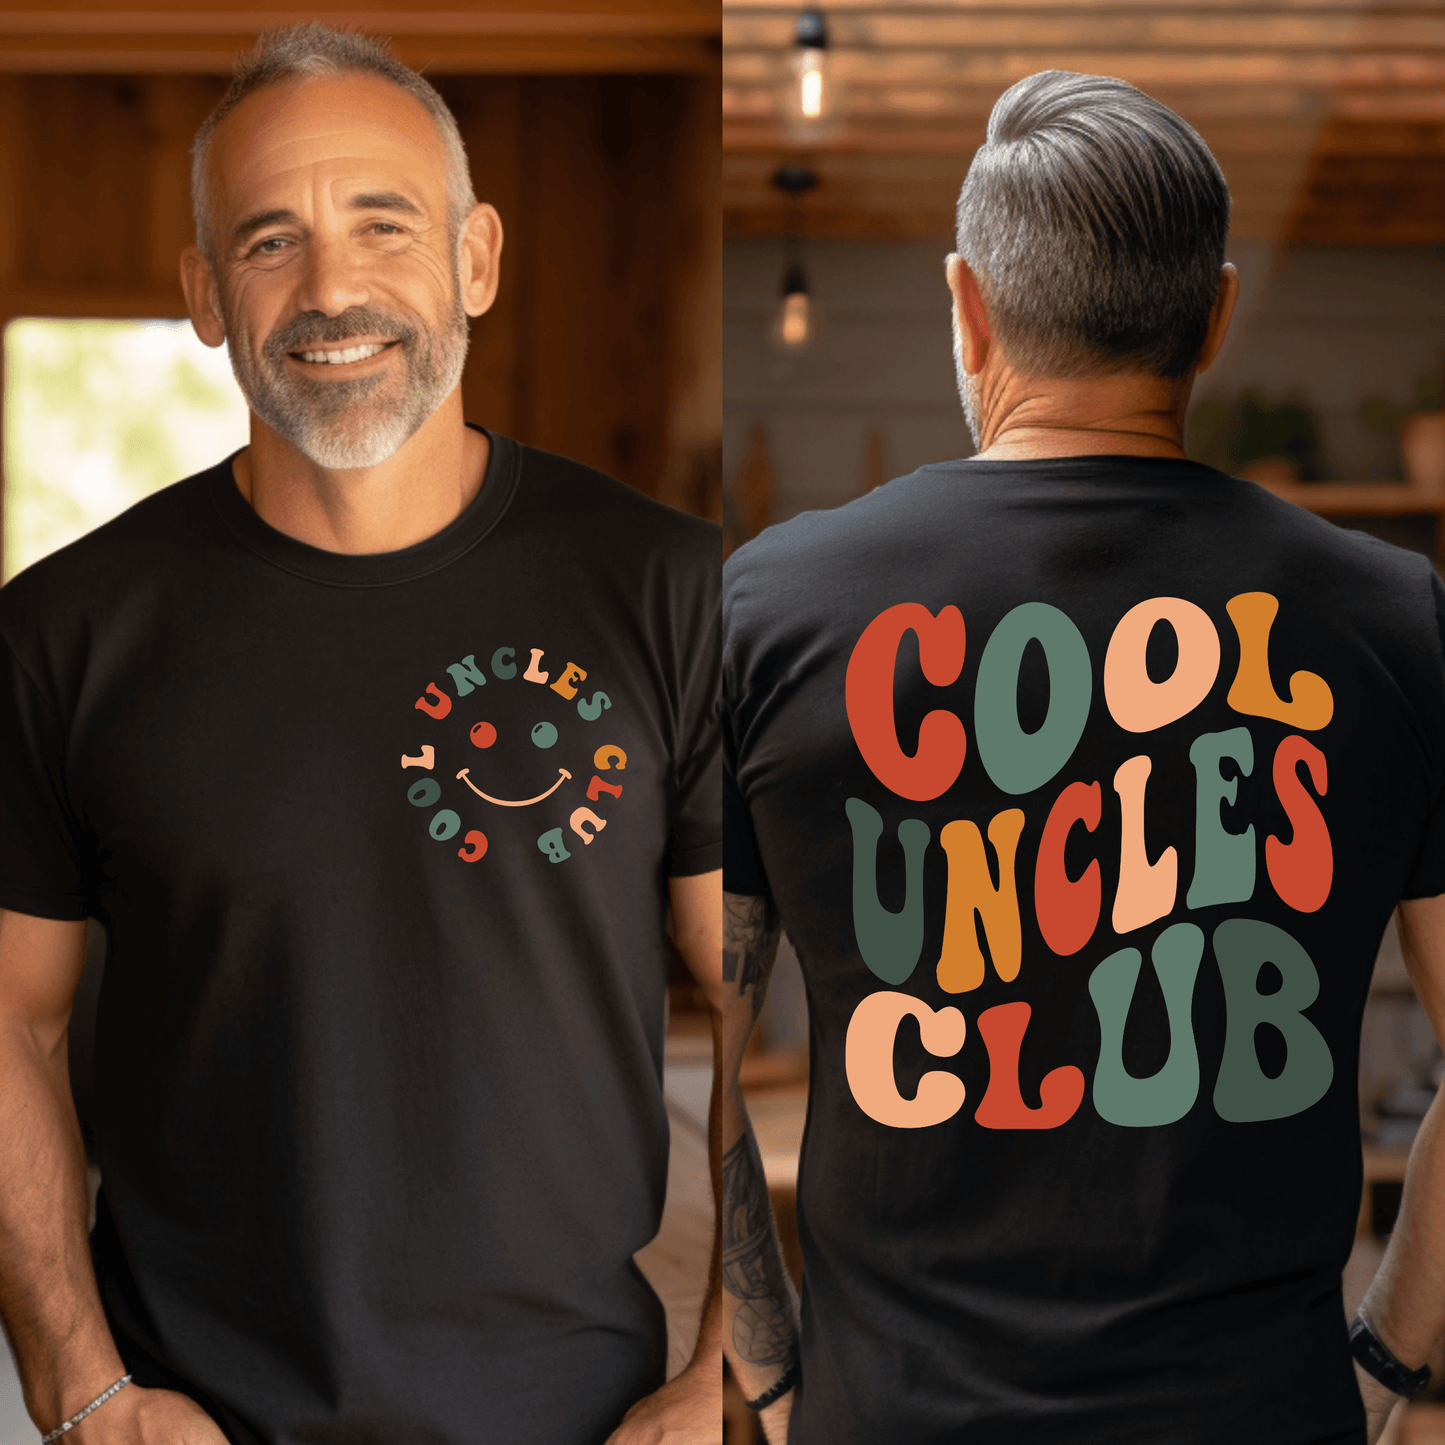 Cooler Onkel Club – Ideal für das Familientreffen - GiftHaus